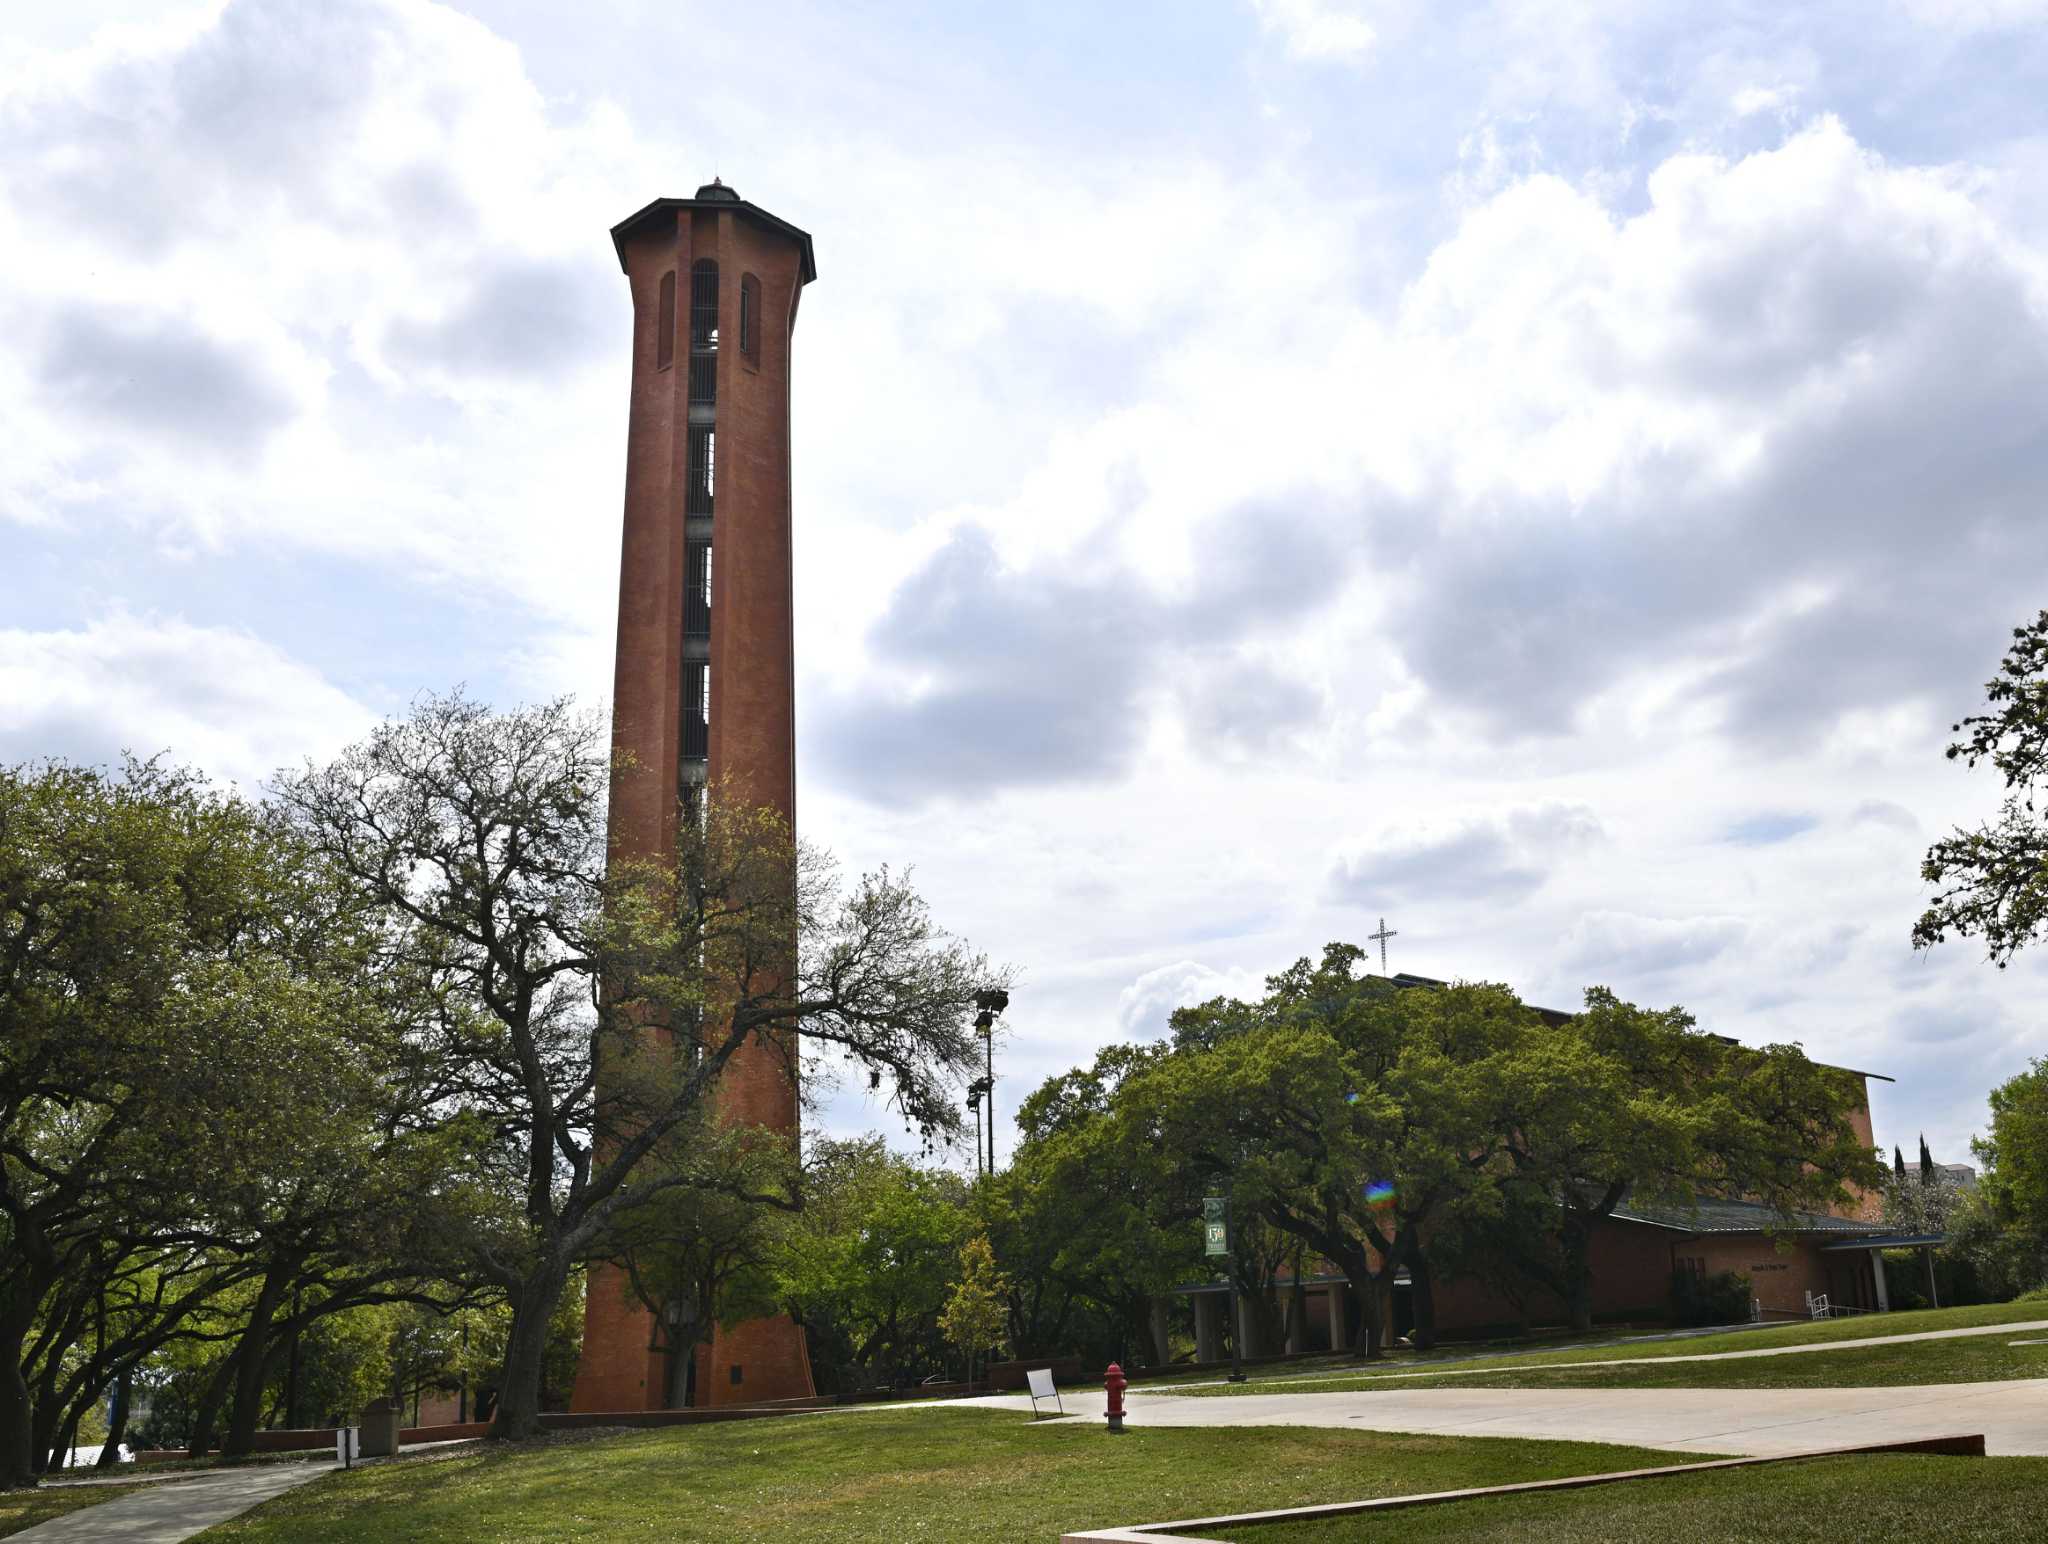   
																7 things to know about San Antonio's Trinity University 
															 